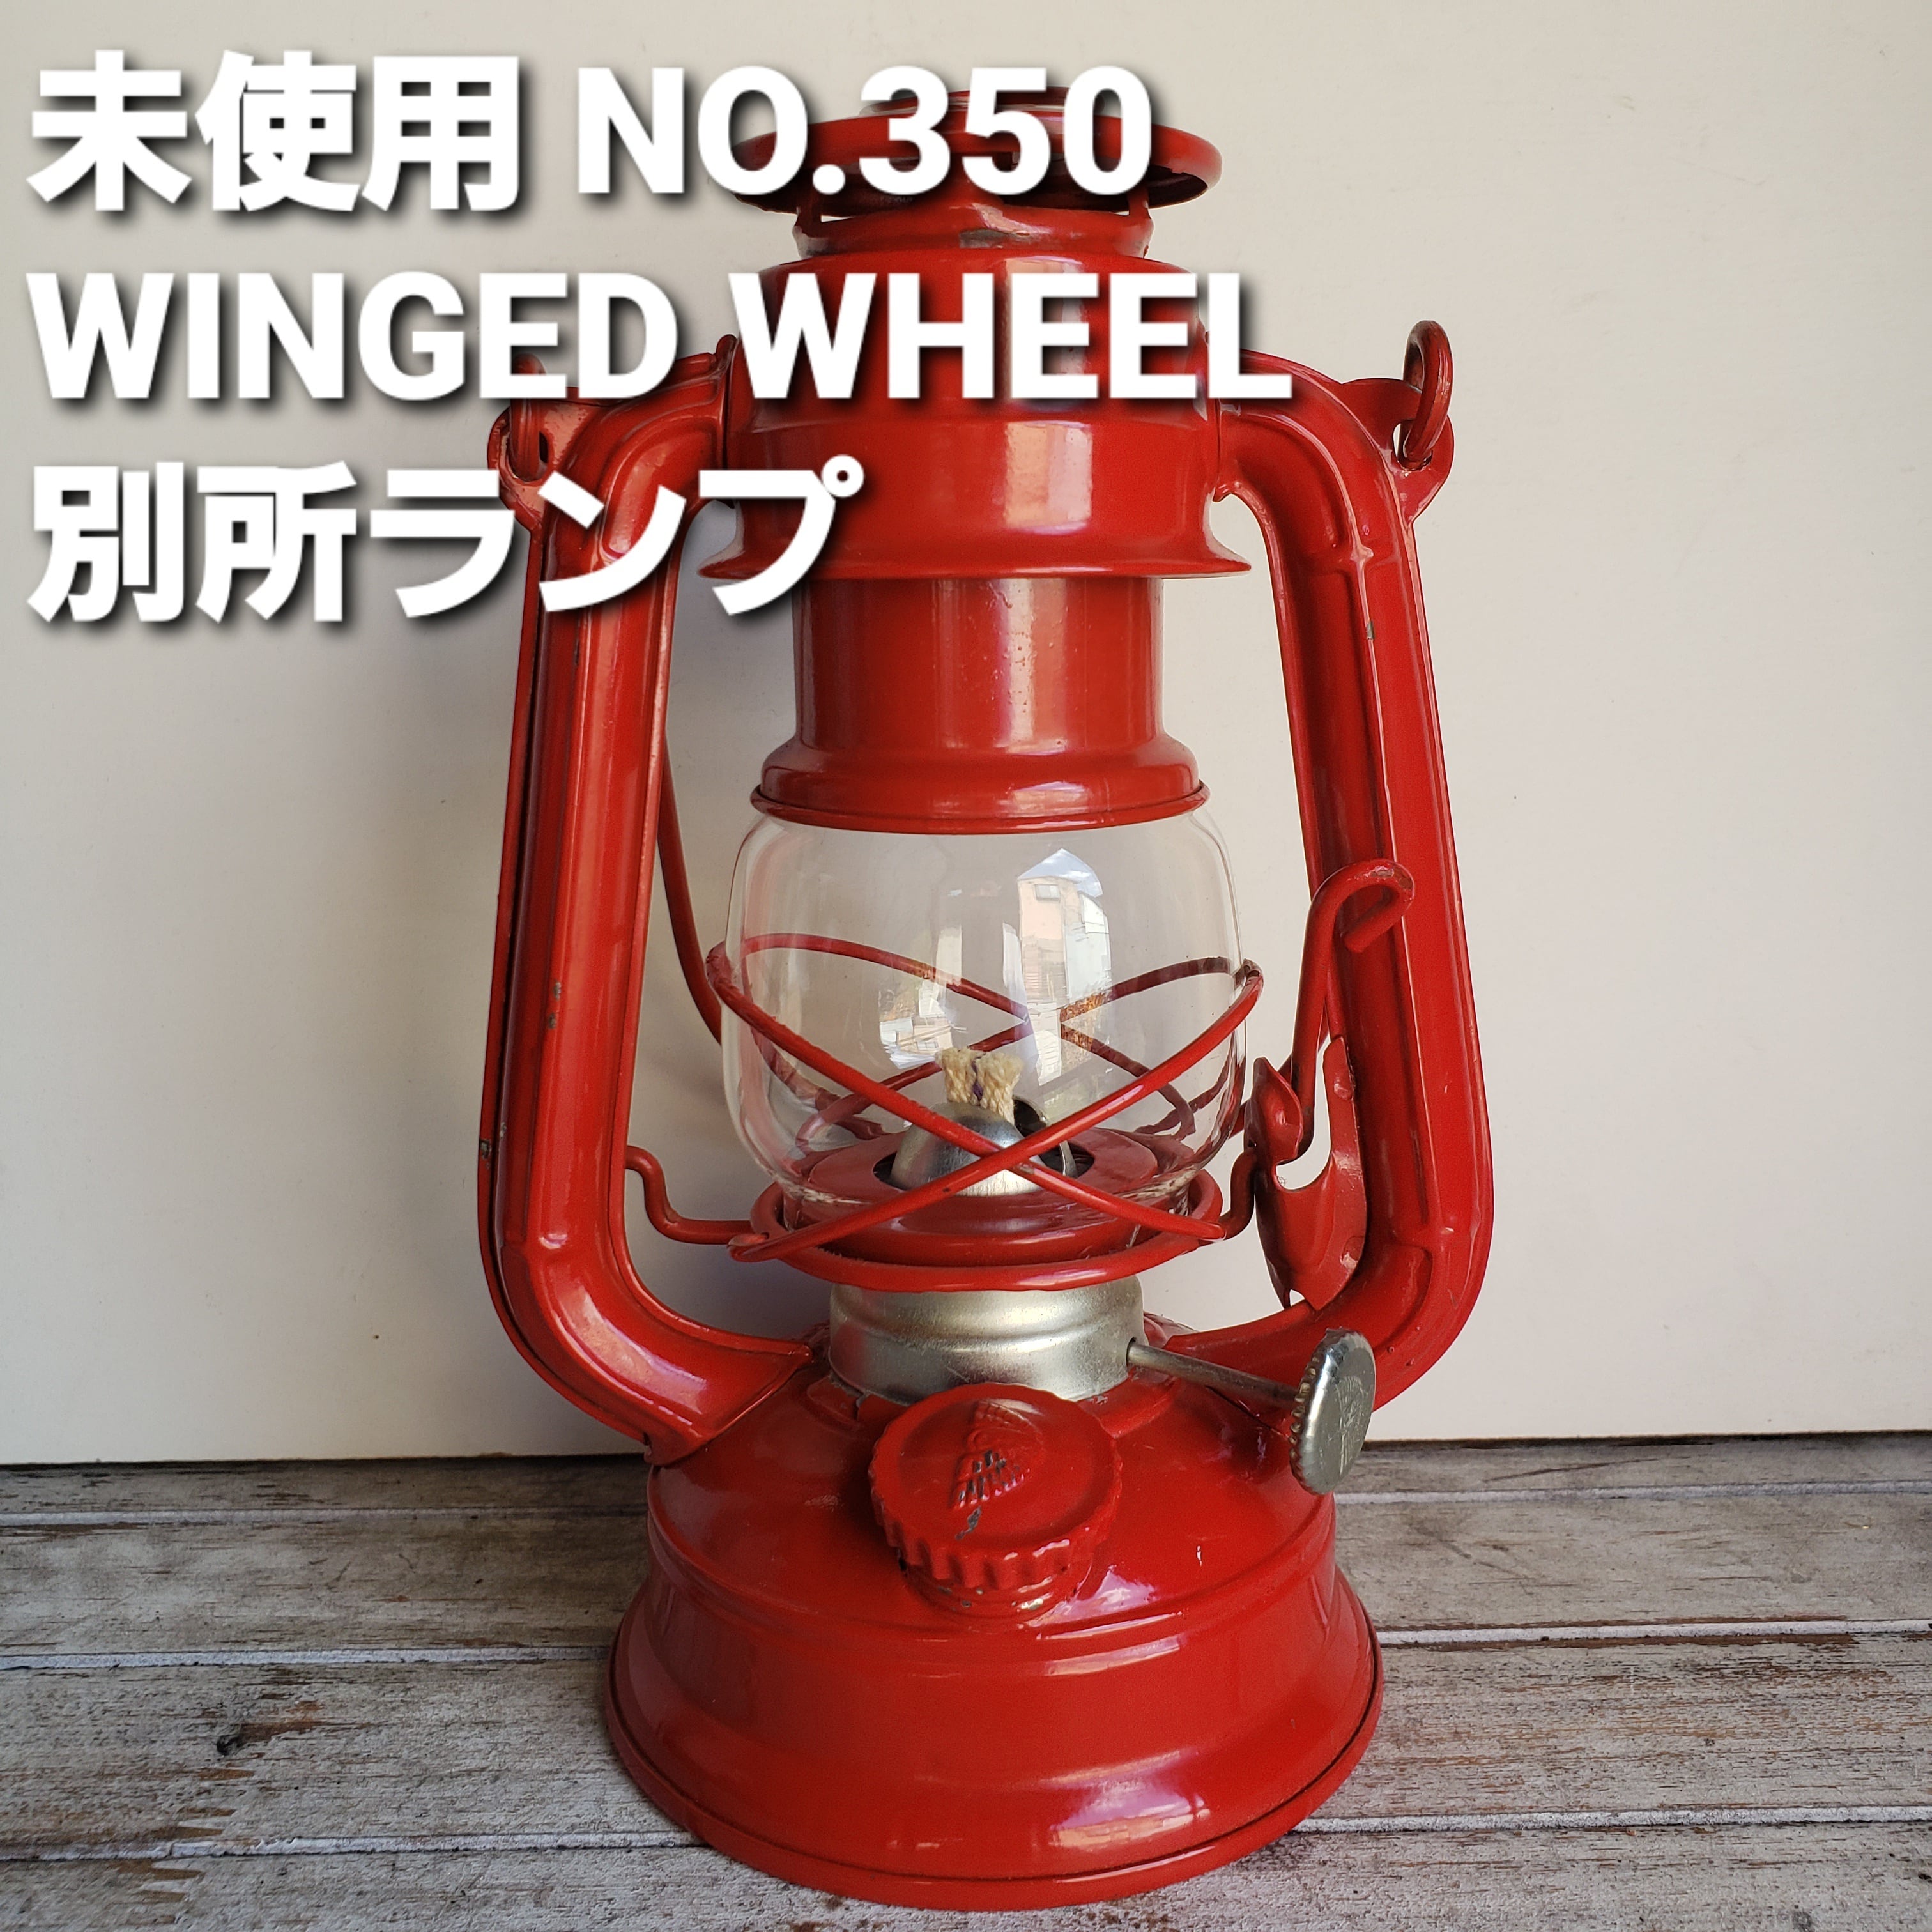 WINGED WHEEL（別所ランプ）No.350 ※グローブなし - ライト・ランタン